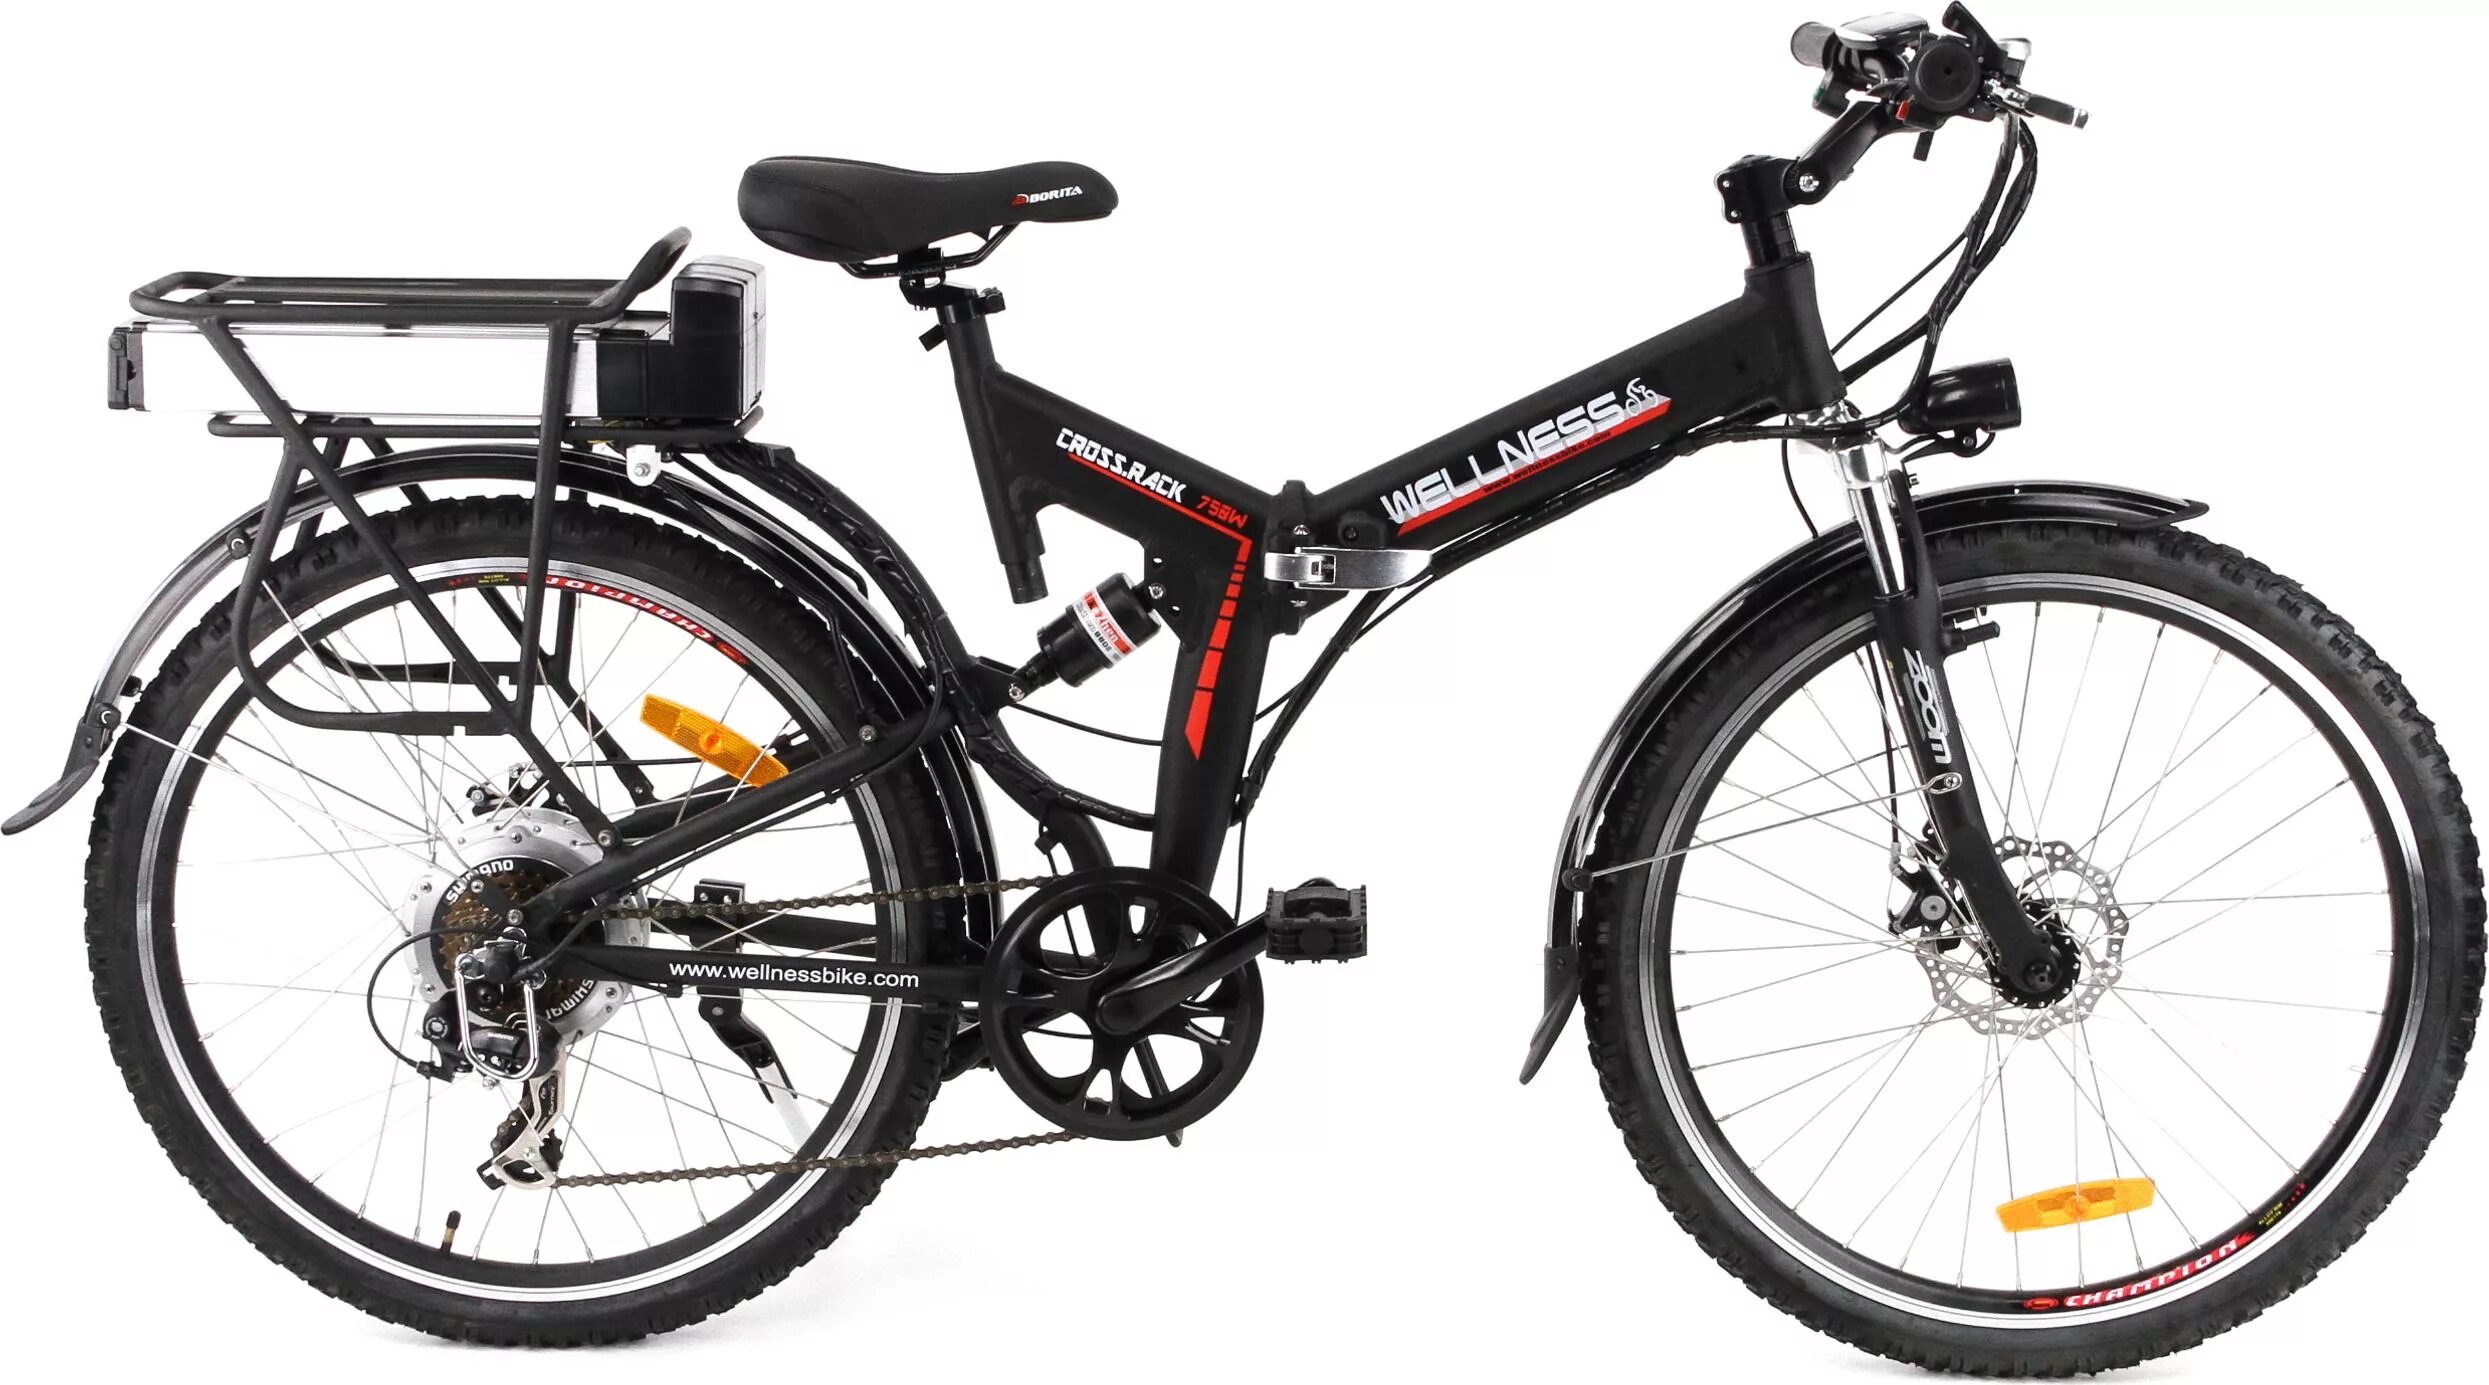 Электровелосипед Wellness Cross Rack 750. Wels Saturn велосипед. Велнес велосипед. Амортизатор Wellness Cross. Pack 750w. Электровелосипед купить в туле